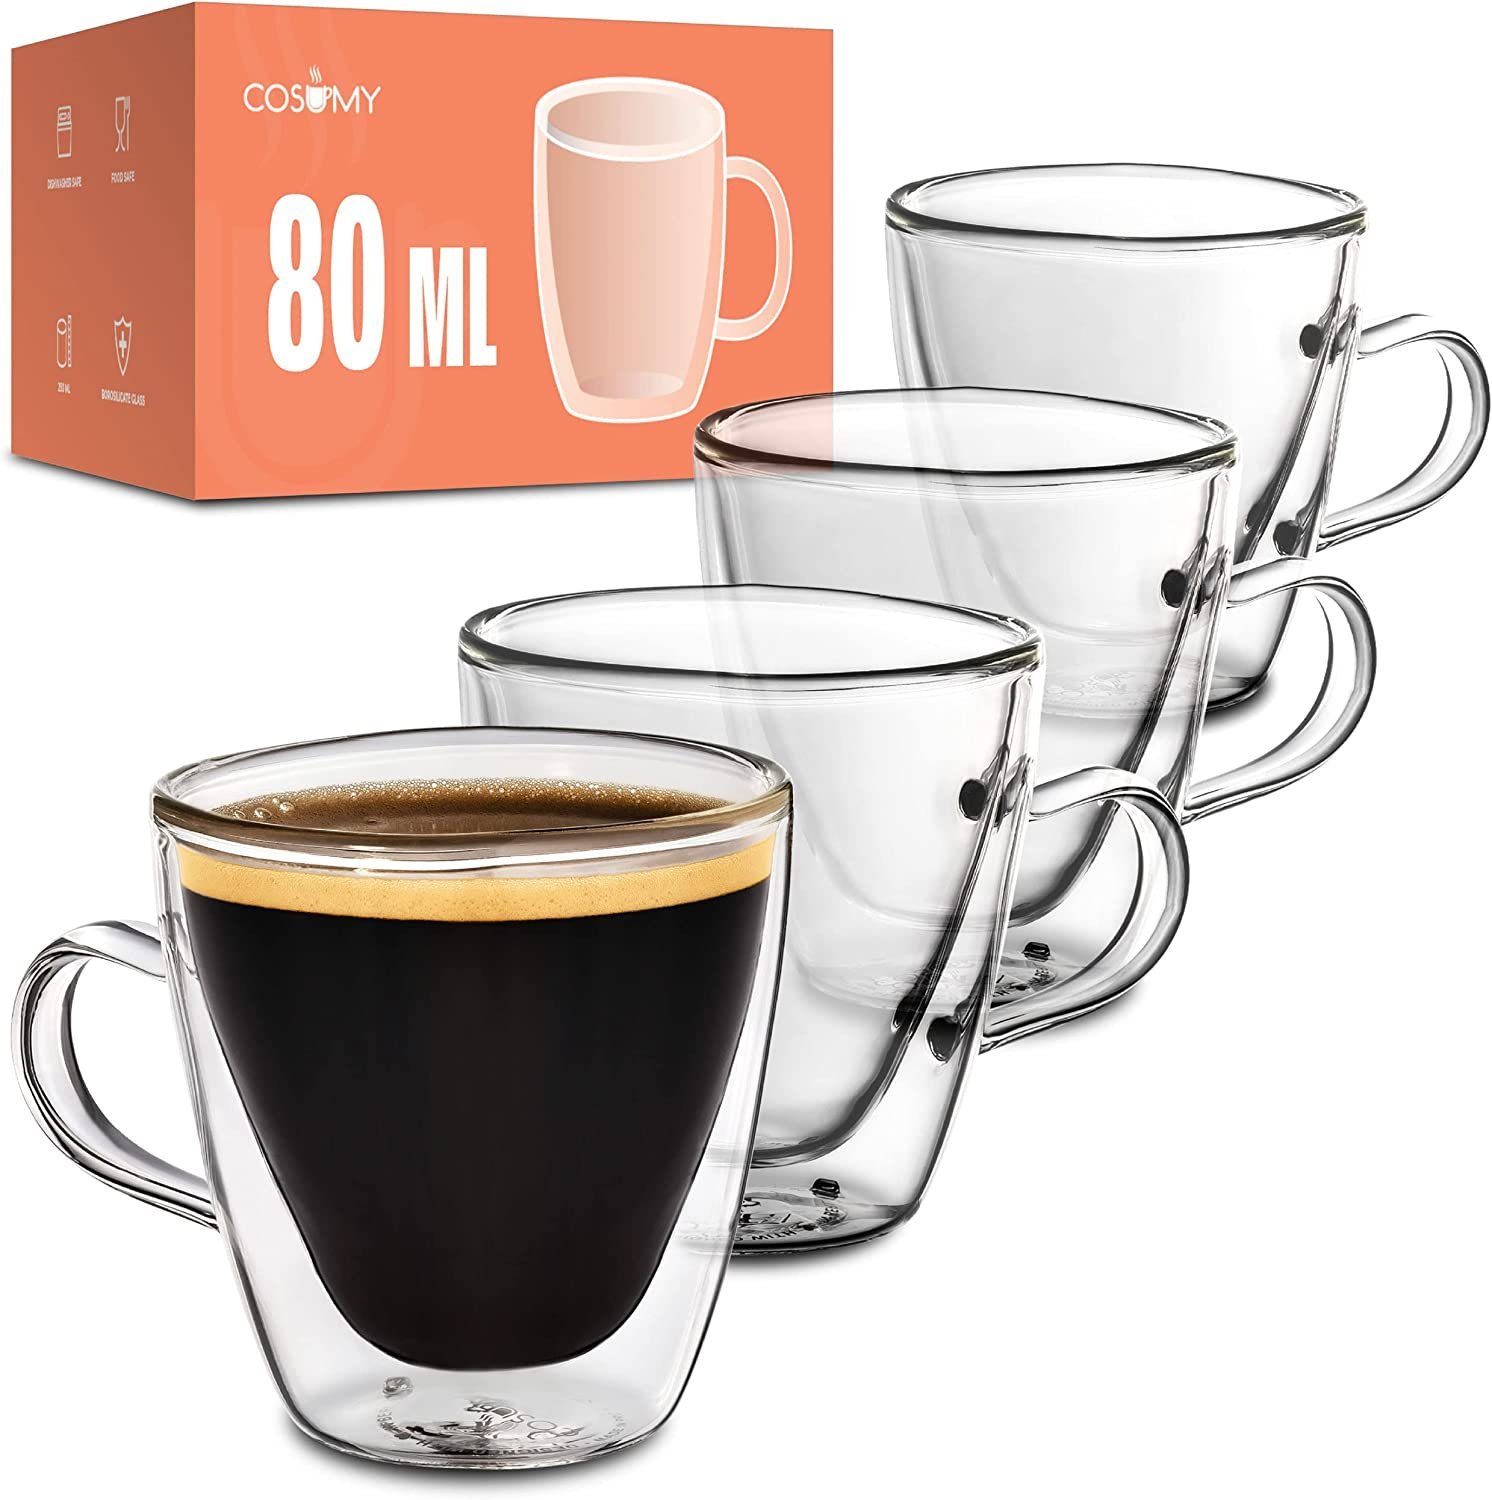 Cosumy Gläser-Set 4 doppelwandige Espressogläser 80ml mit Henkel, Glas, Espressotassen aus Glas mit Henkel - 4er Set